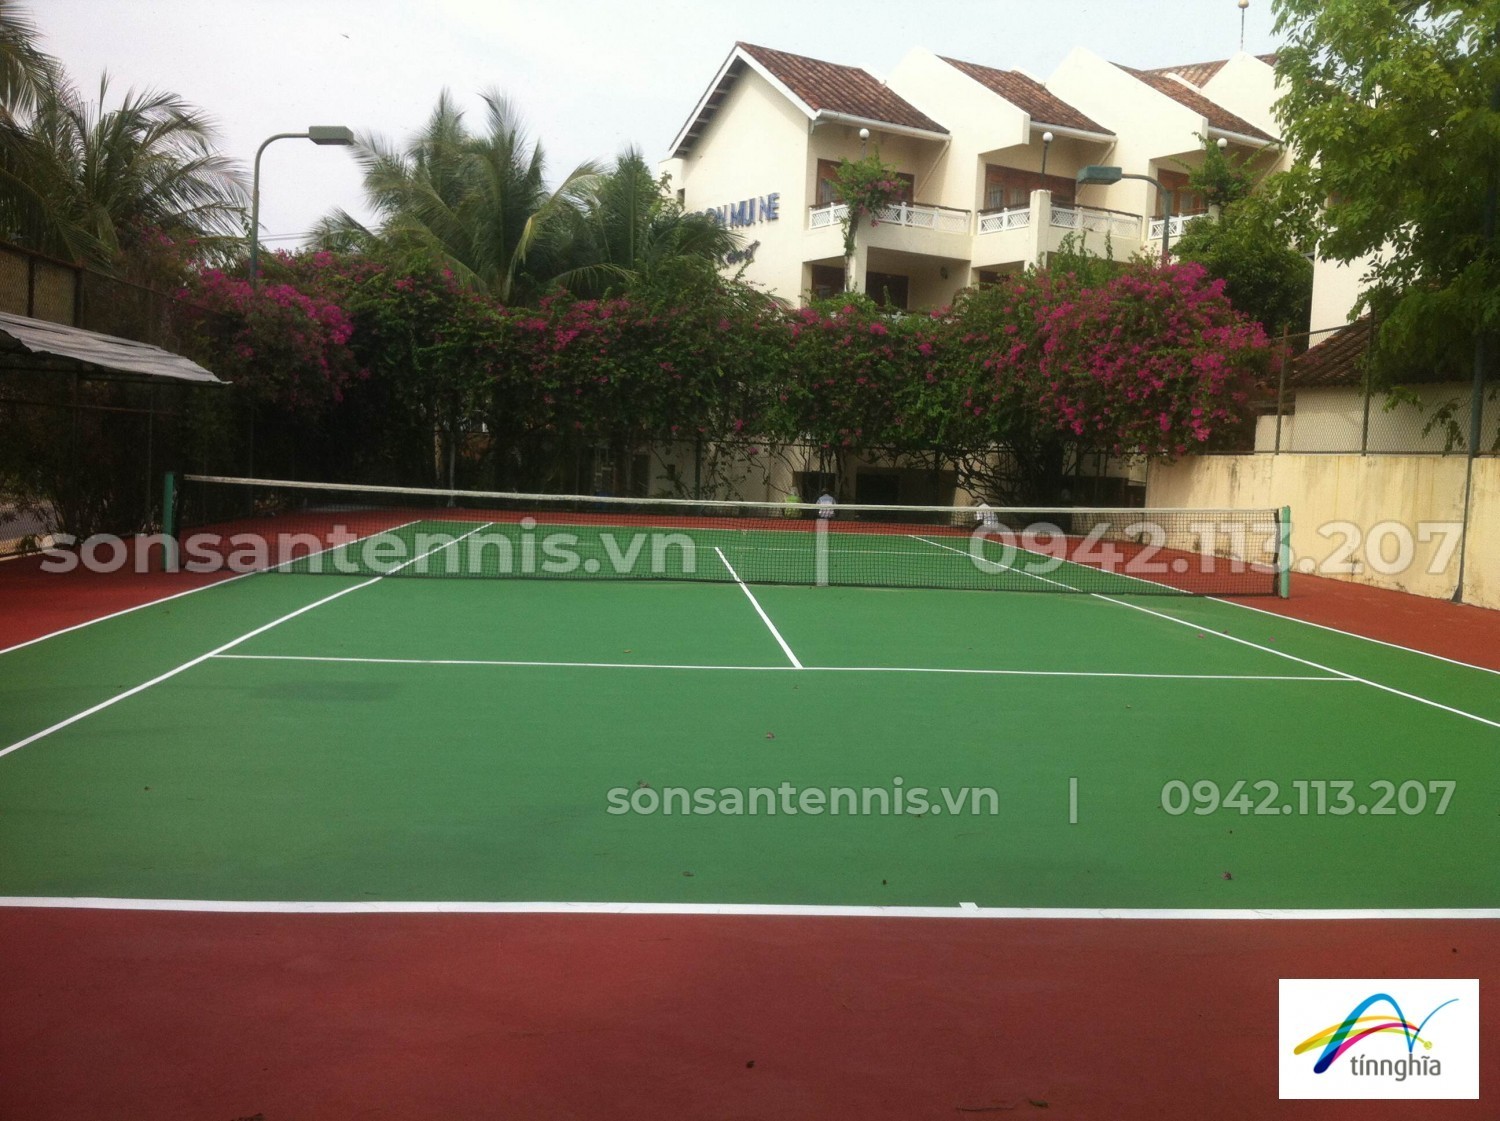 [Dự án] Sơn Nova Sport 1 sân tennis Resort Sài Gòn - Mũi Né